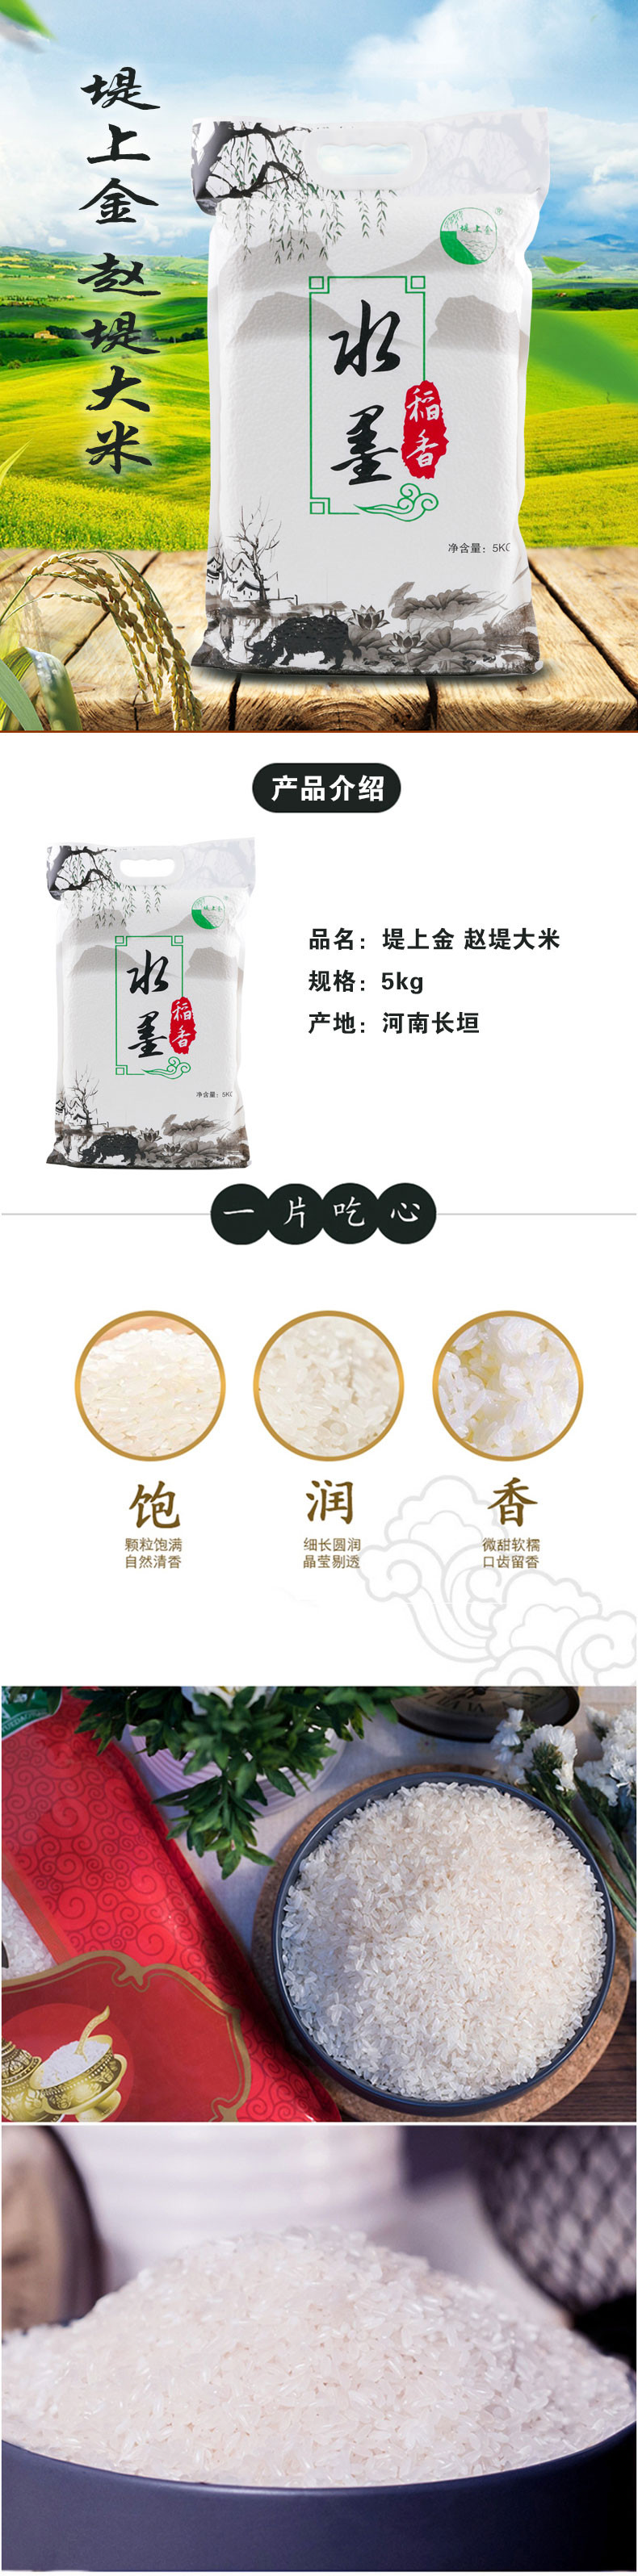 【消费扶贫】堤上金 赵堤大米5kg 水墨稻香 大米 粳米